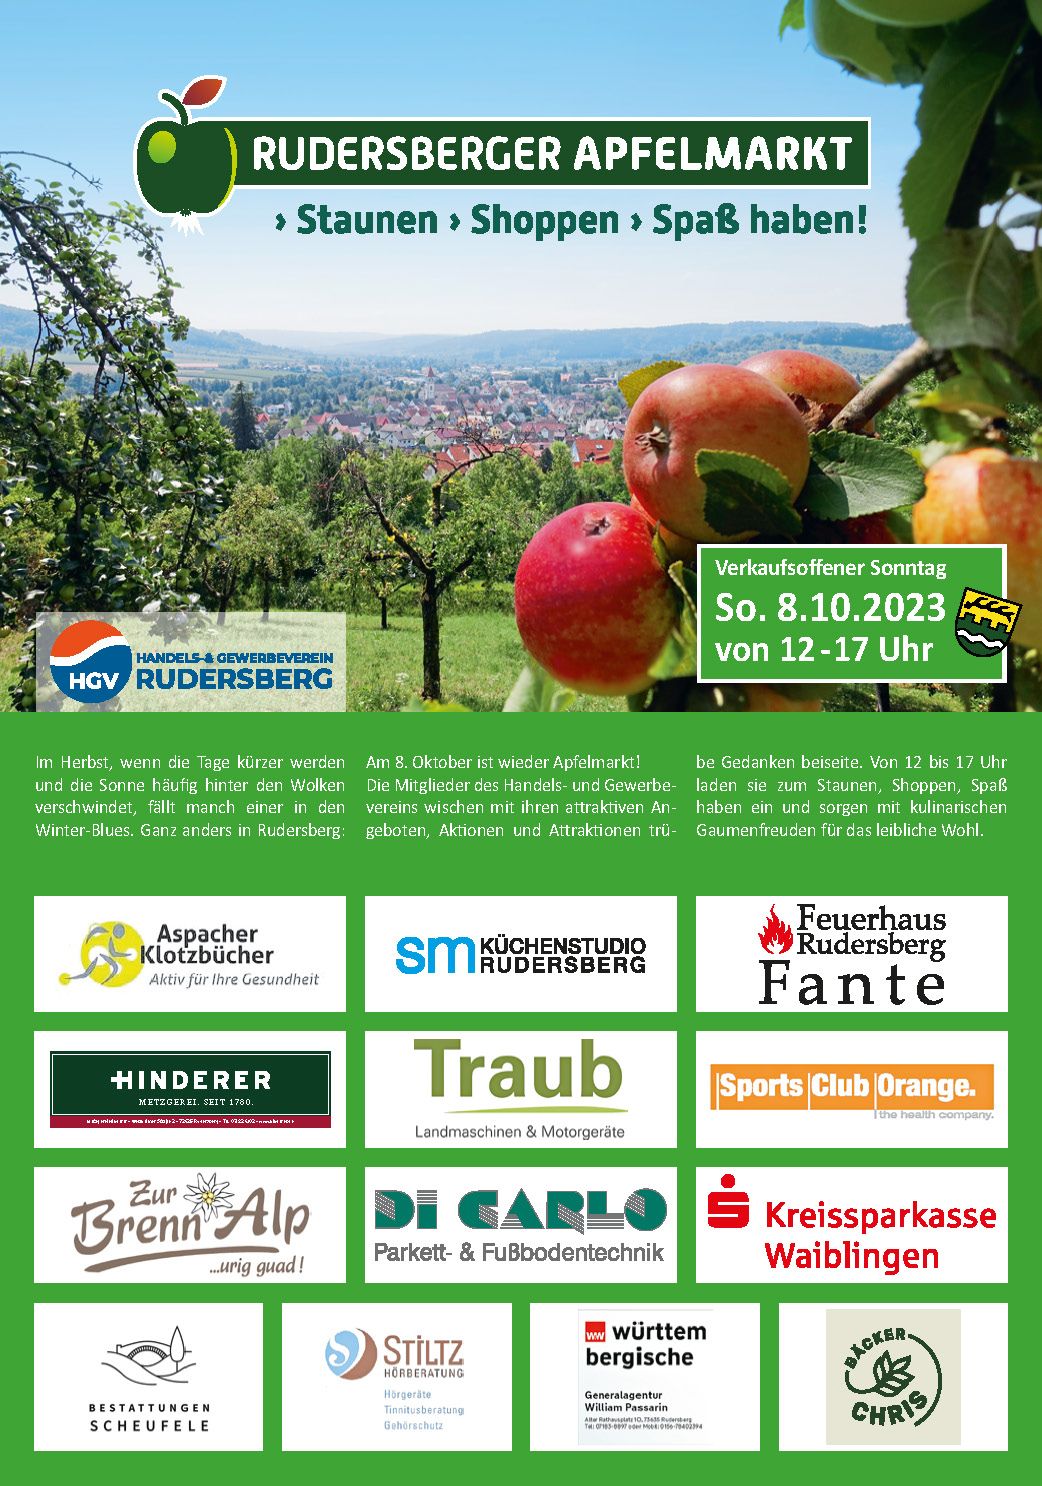 Rudersberger Apfelmarkt 2023